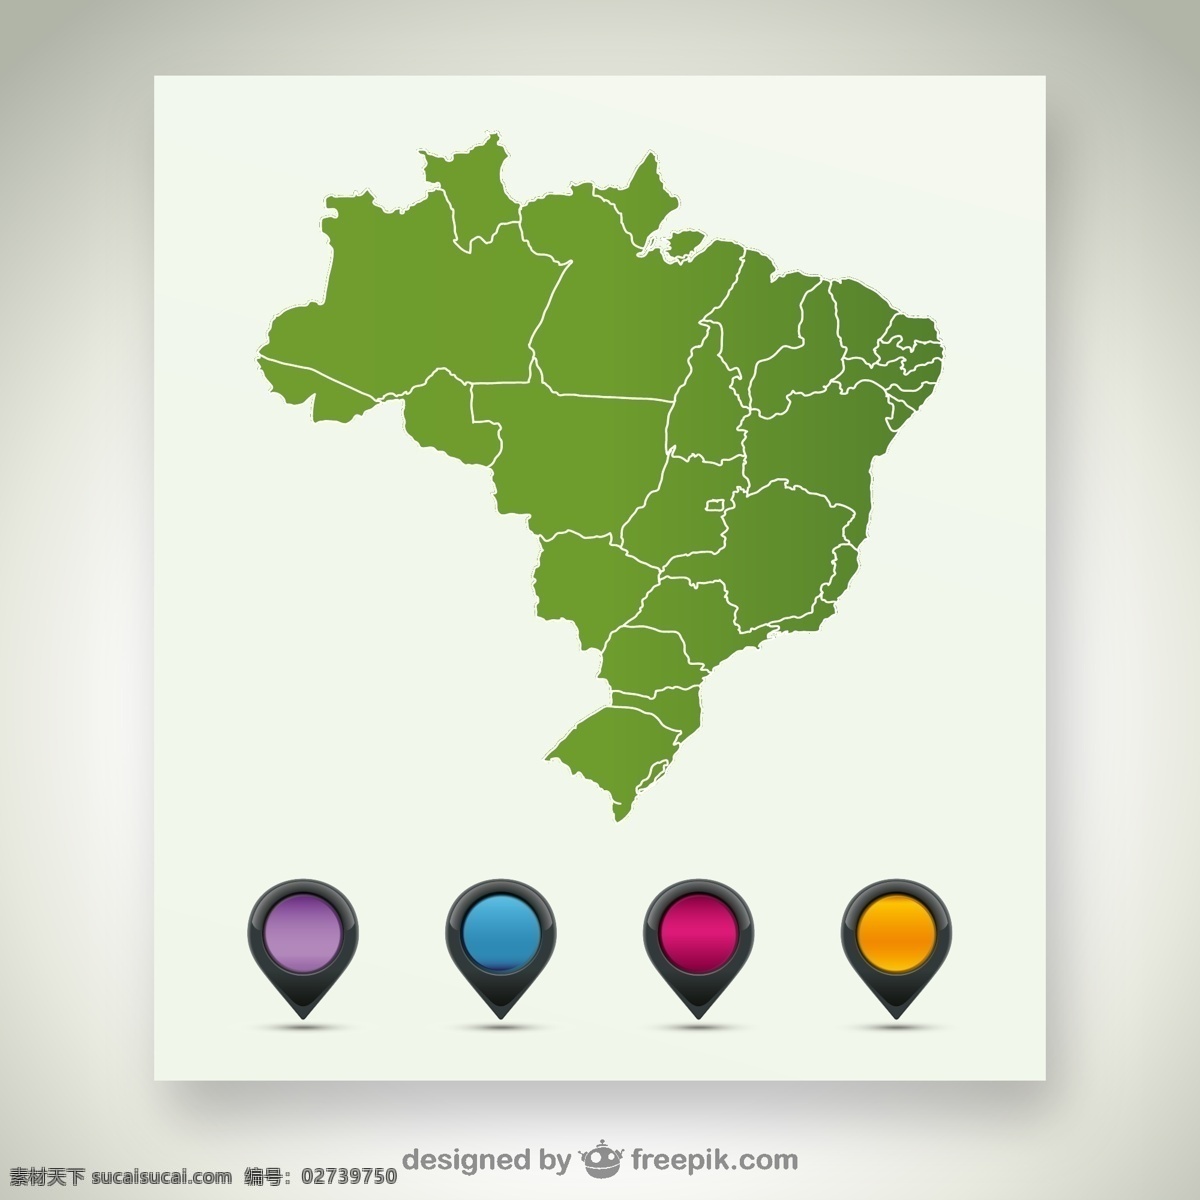 巴西地图素材 巴西地图 巴西 地图 白色